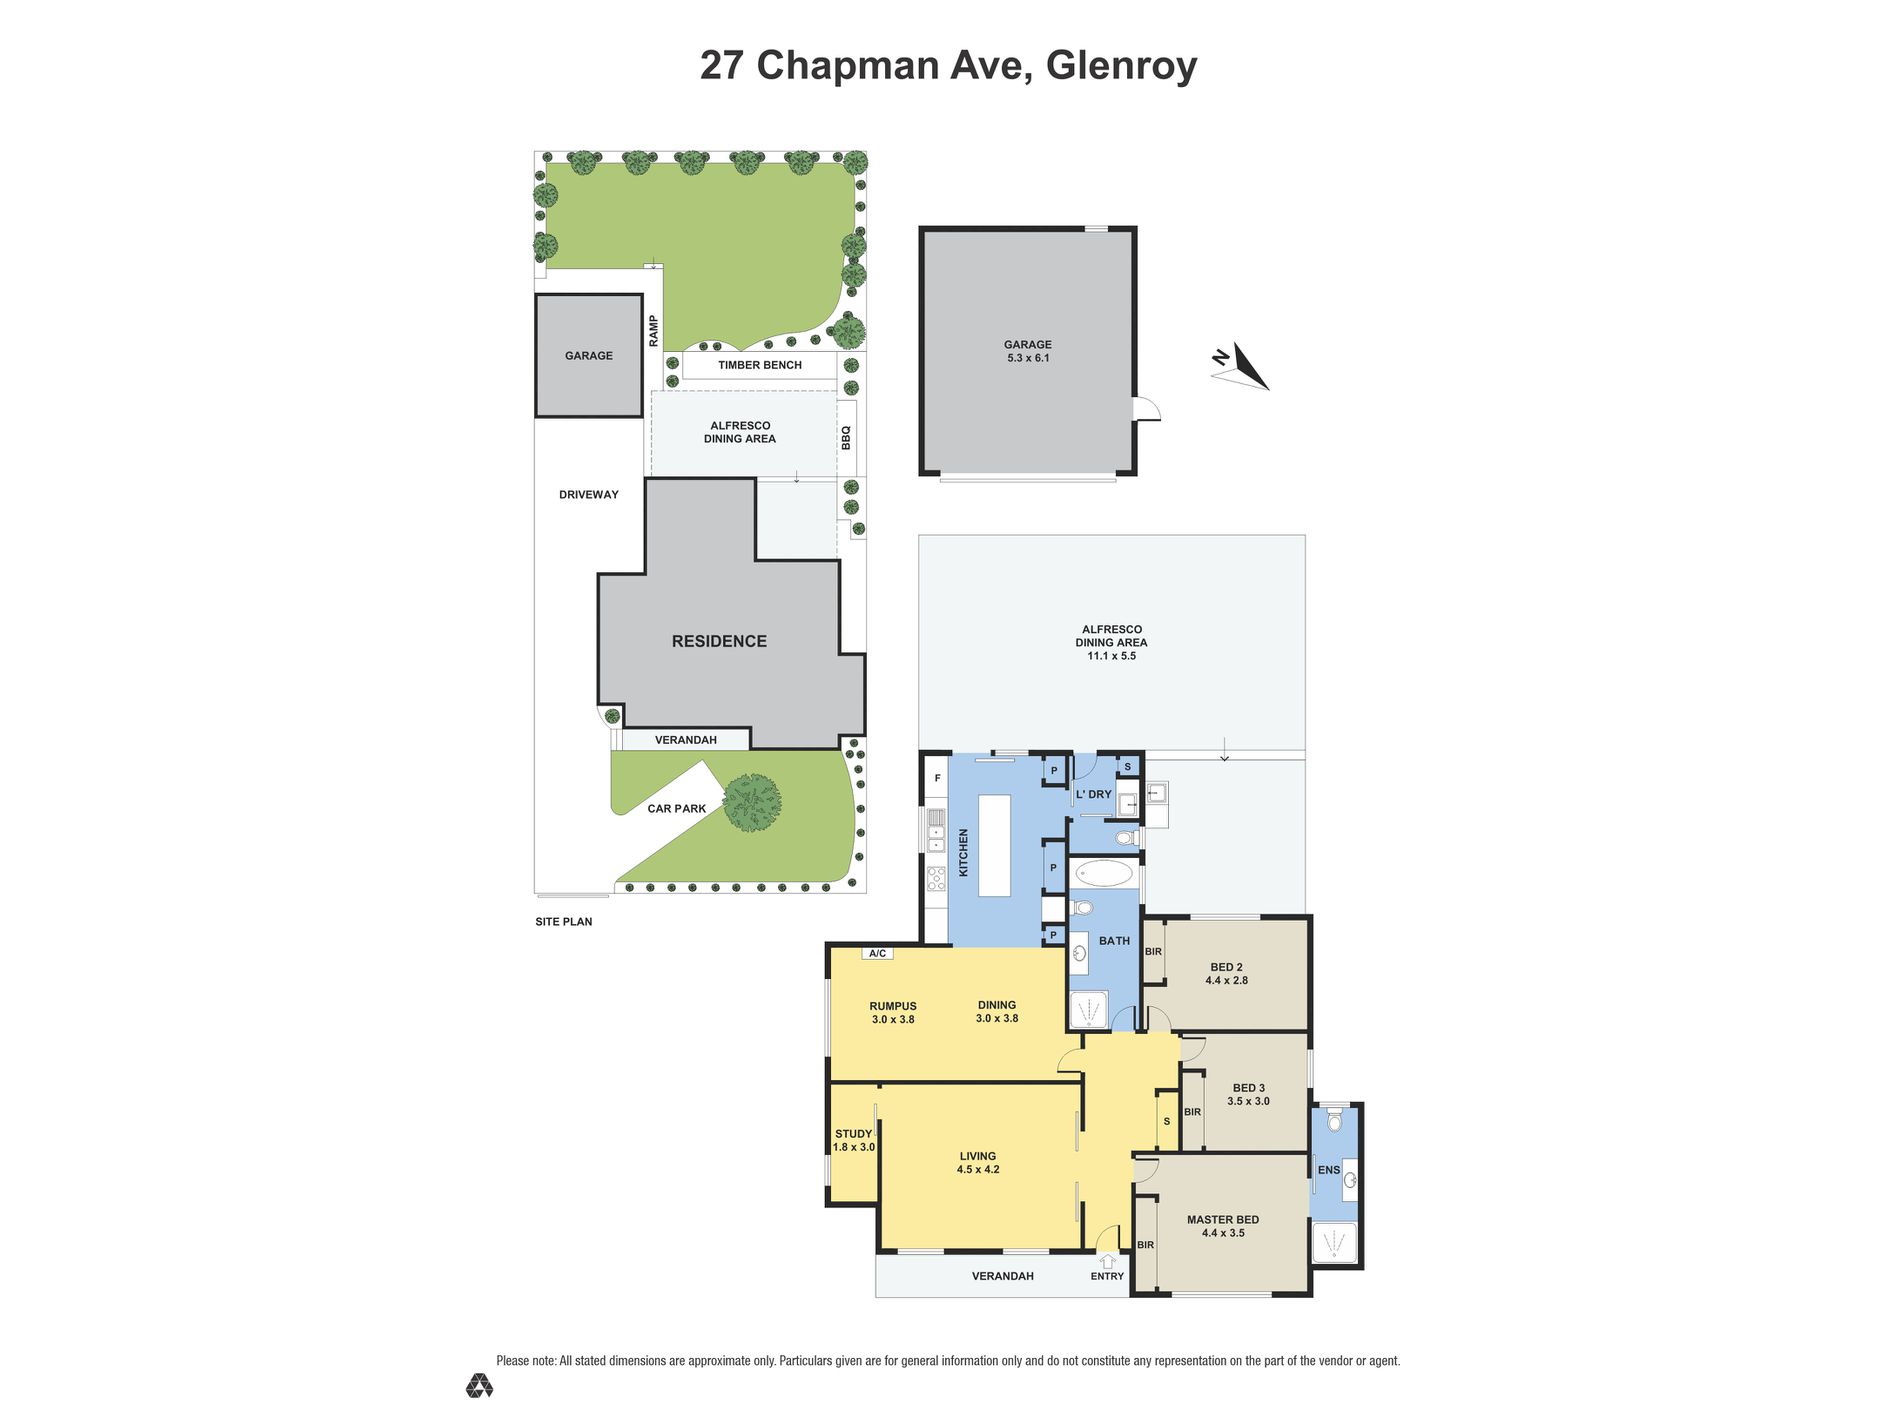 27 Chapman Ave Glenroy, Glenroy